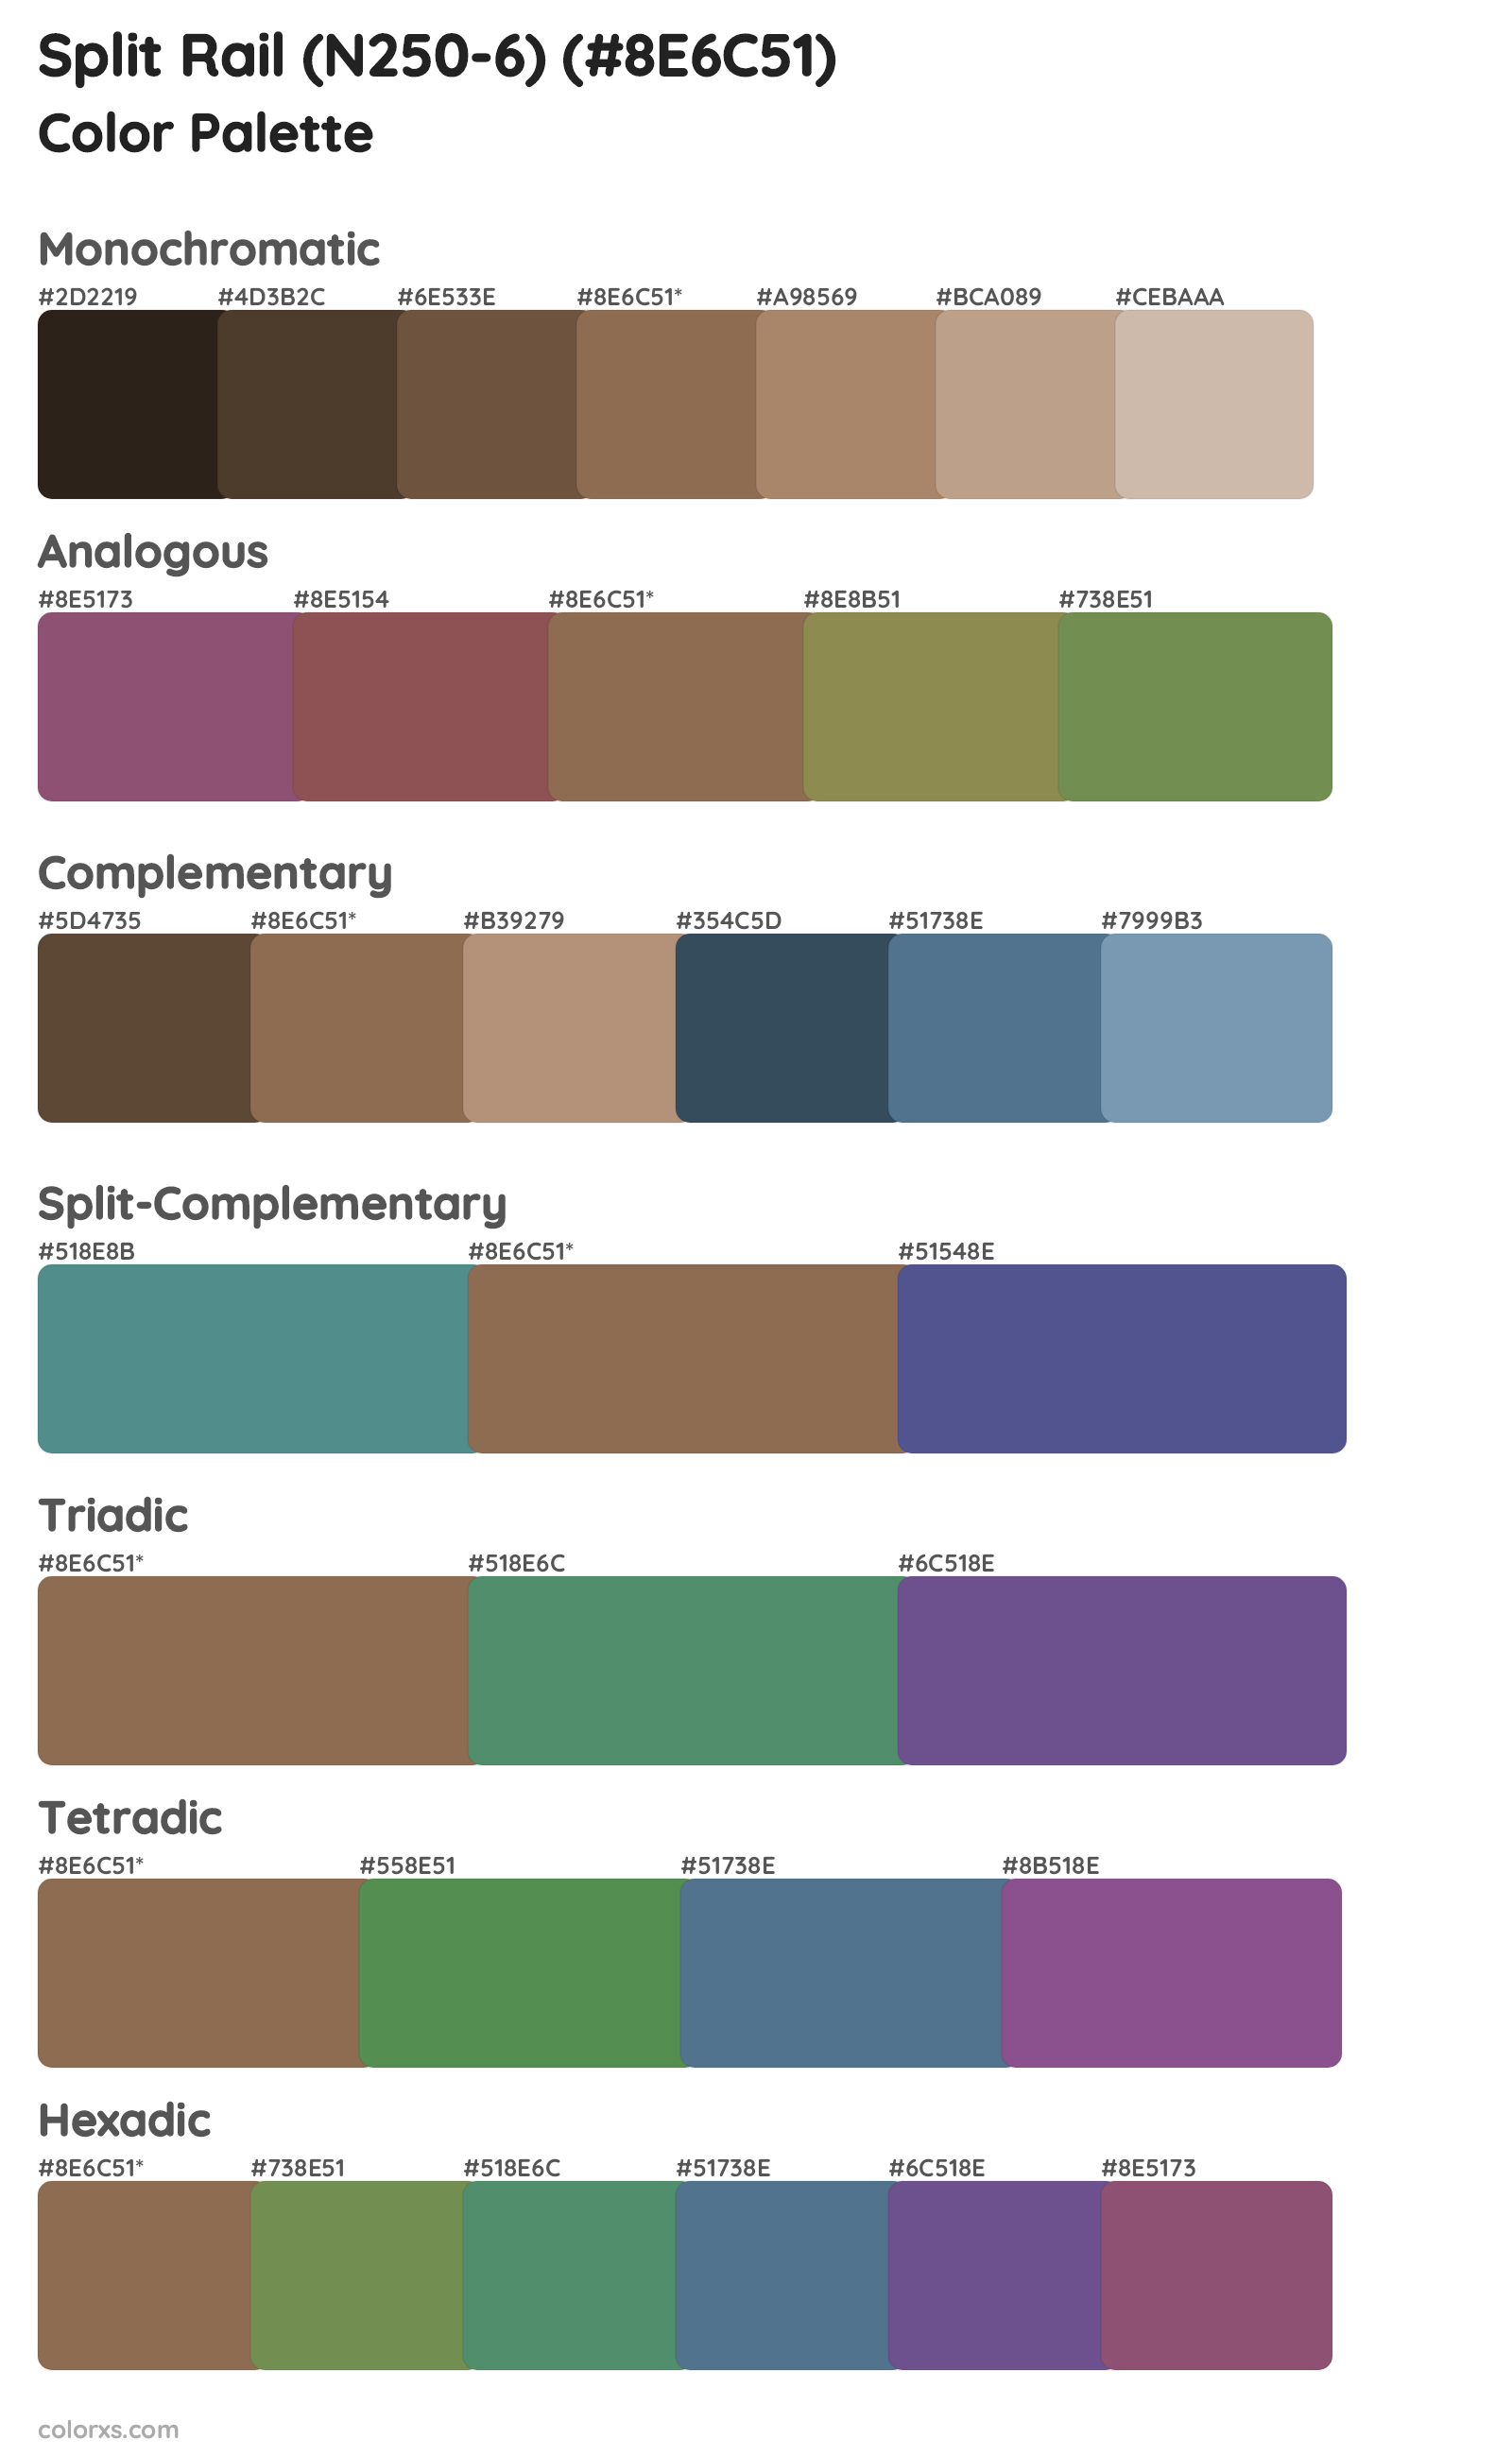 Split Rail (N250-6) Color Scheme Palettes